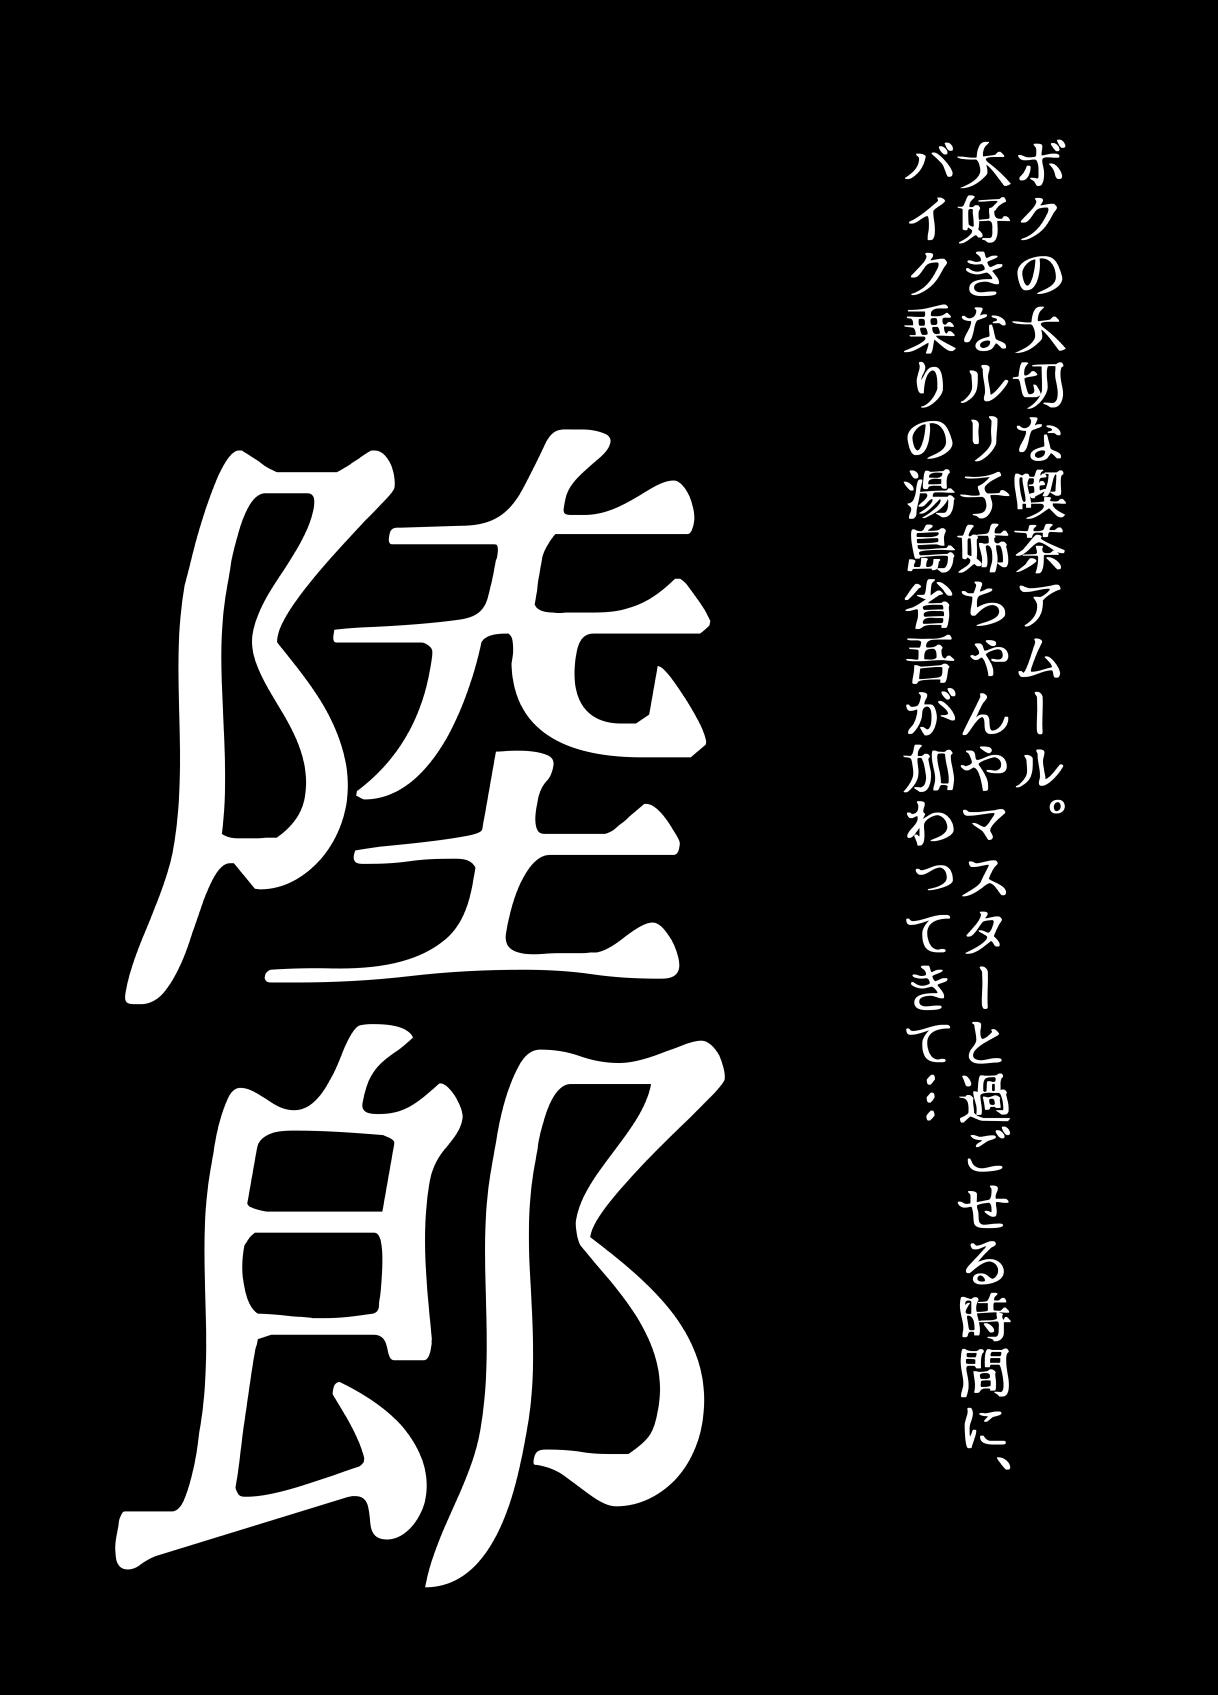 BEYOND ~ Aisubeki Kanata no Hitobito 10 63